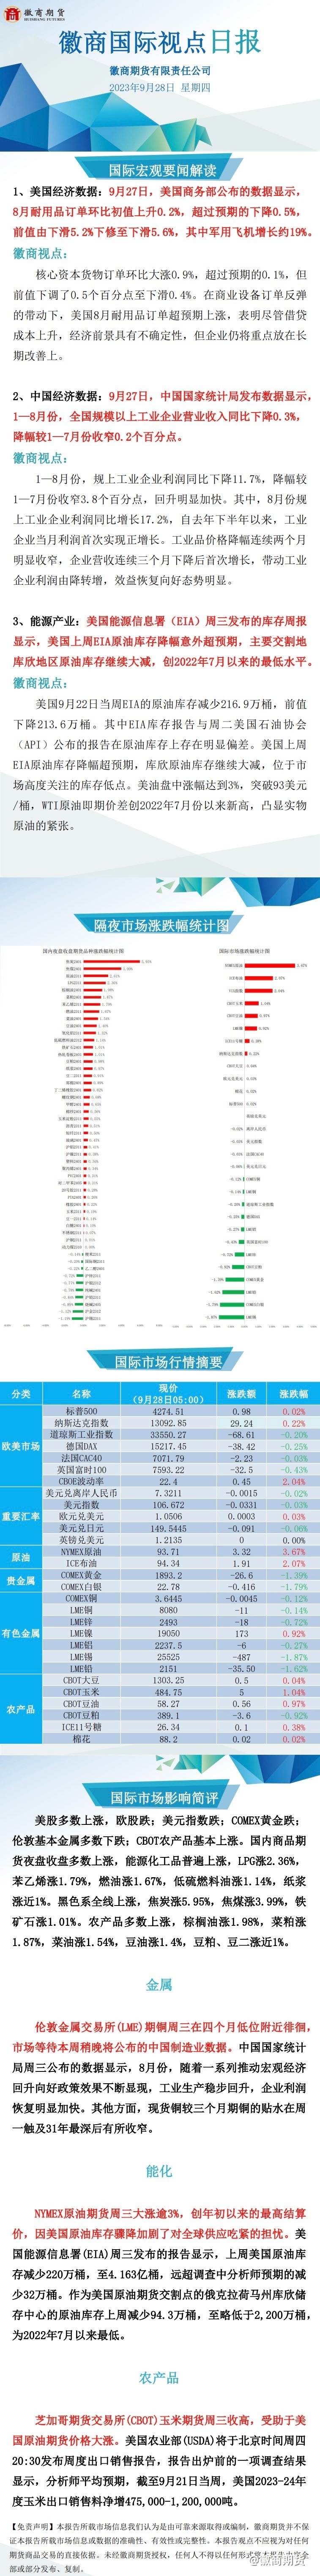 【徽商国际视点】中国8月规模以上工业企业利润同比增长17.2%。